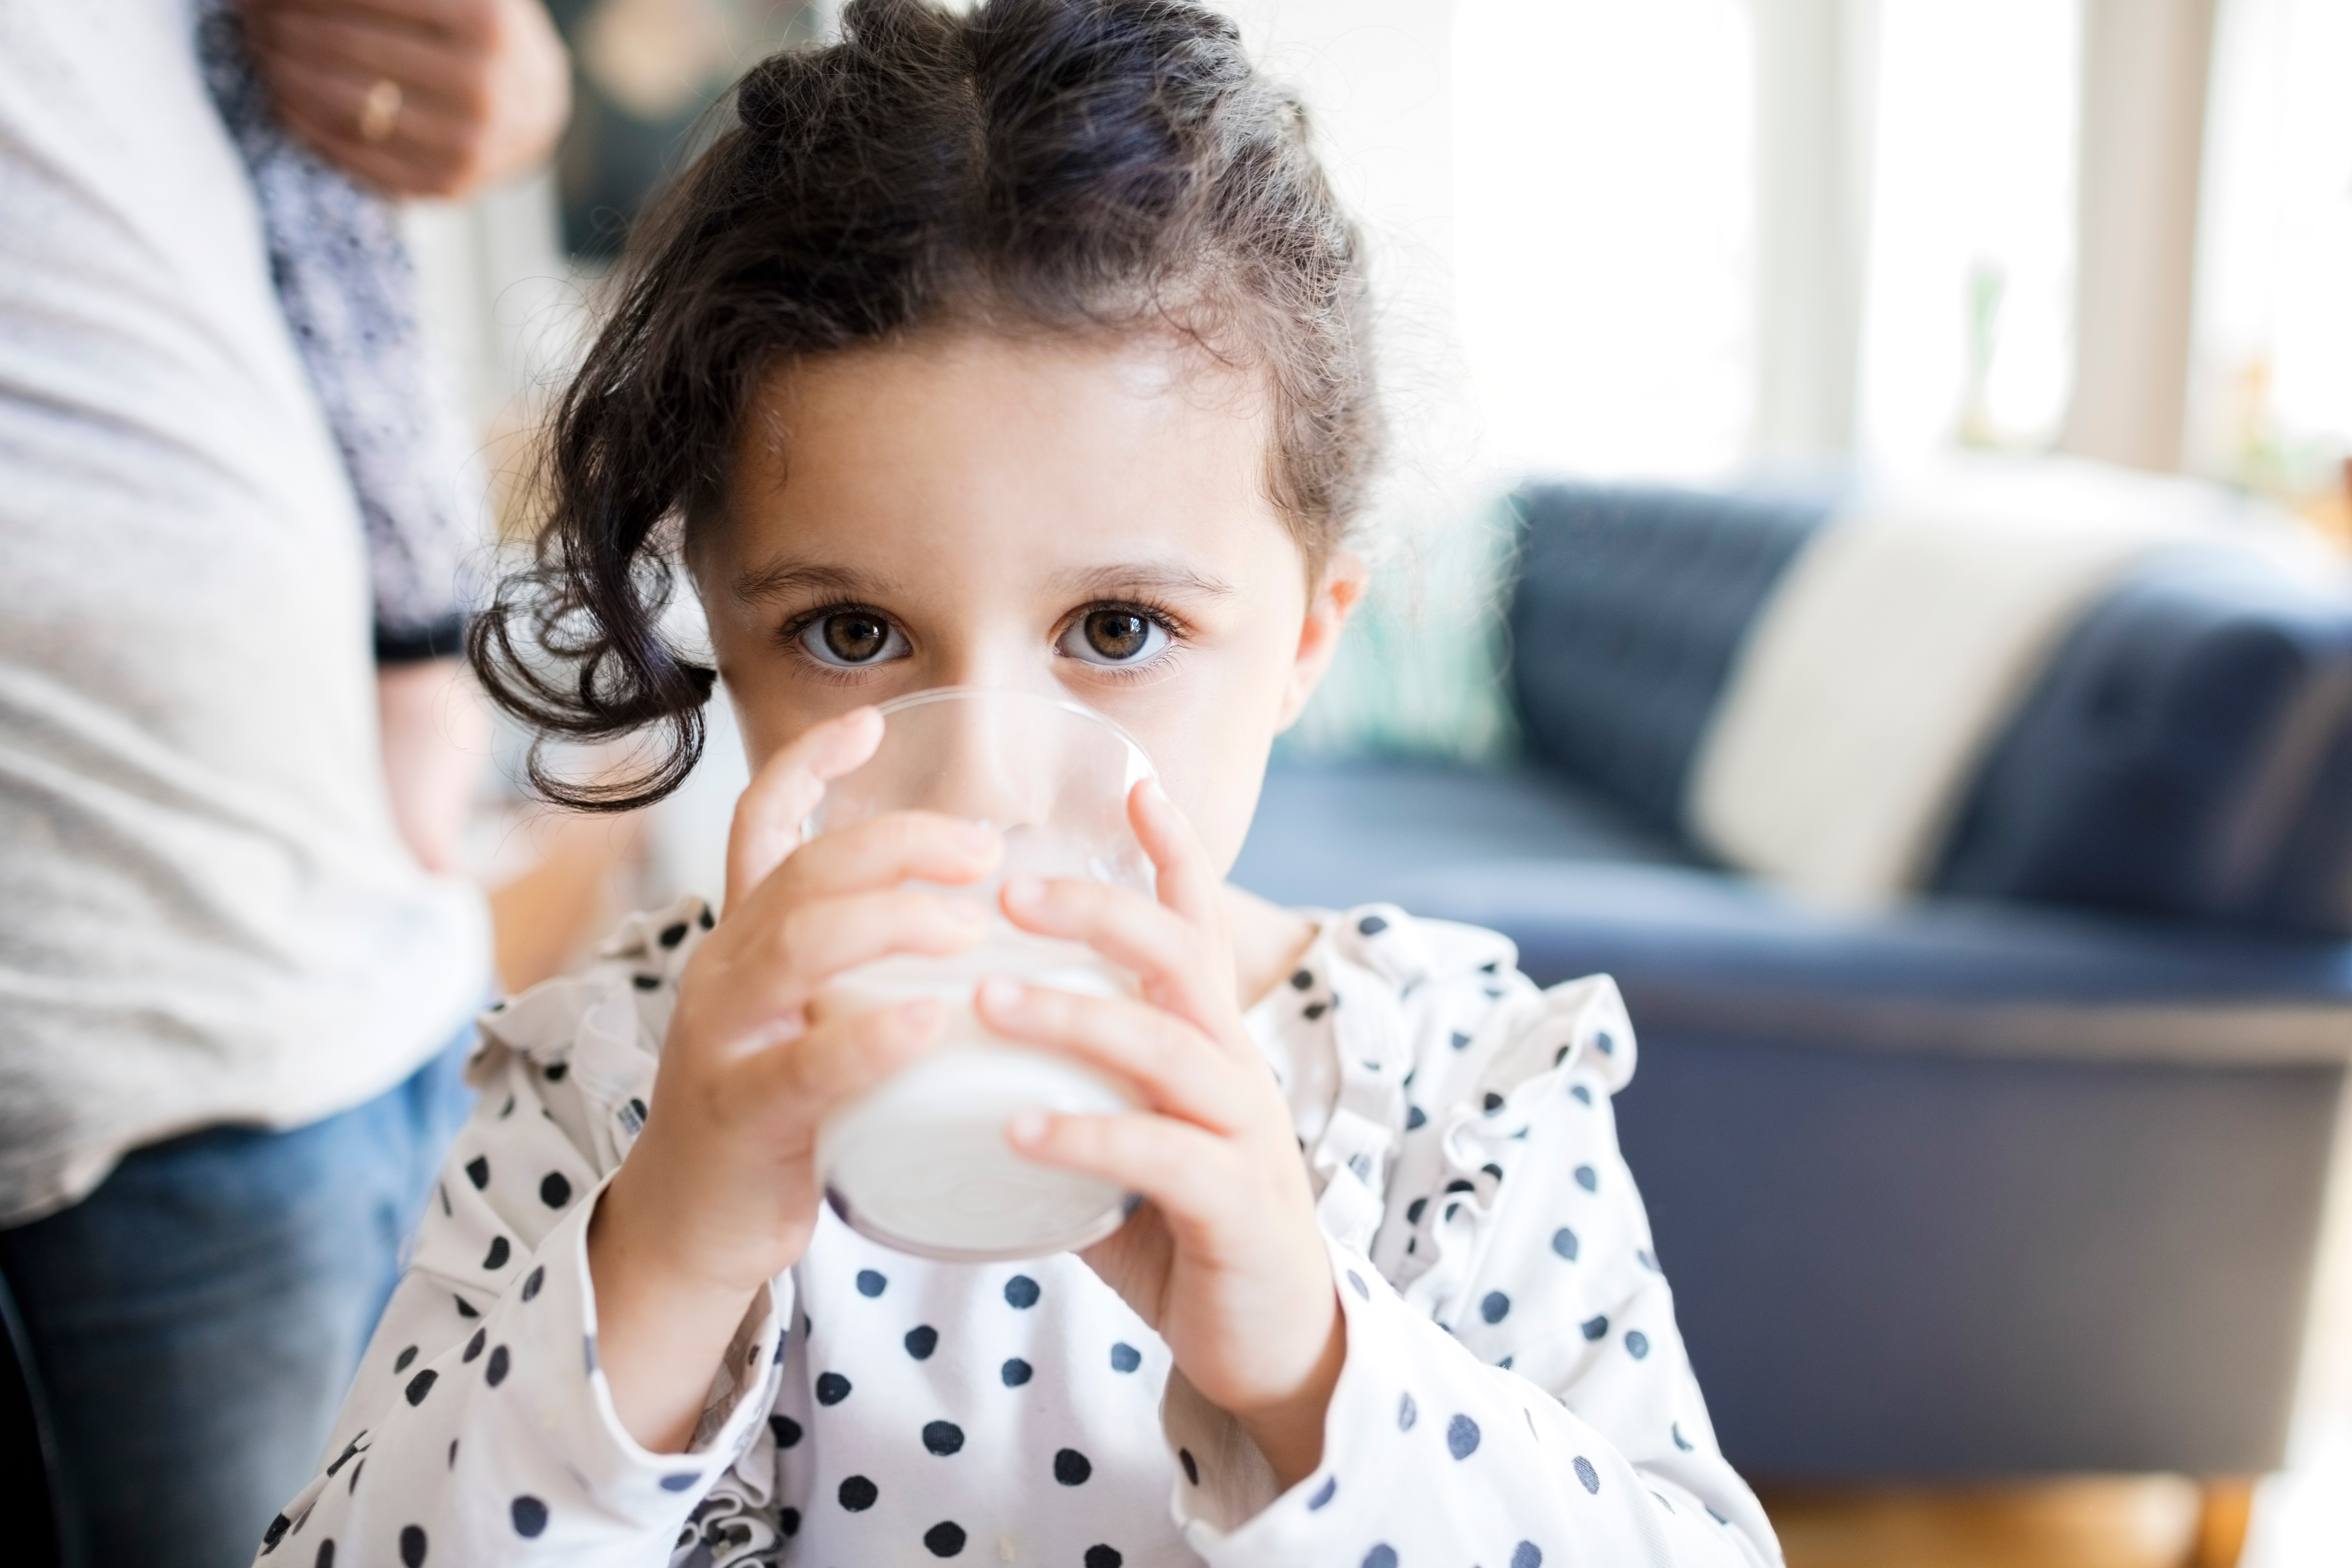 La institución mencionó que las leches saborizadas son más populares entre la población infantil
(Getty Images)